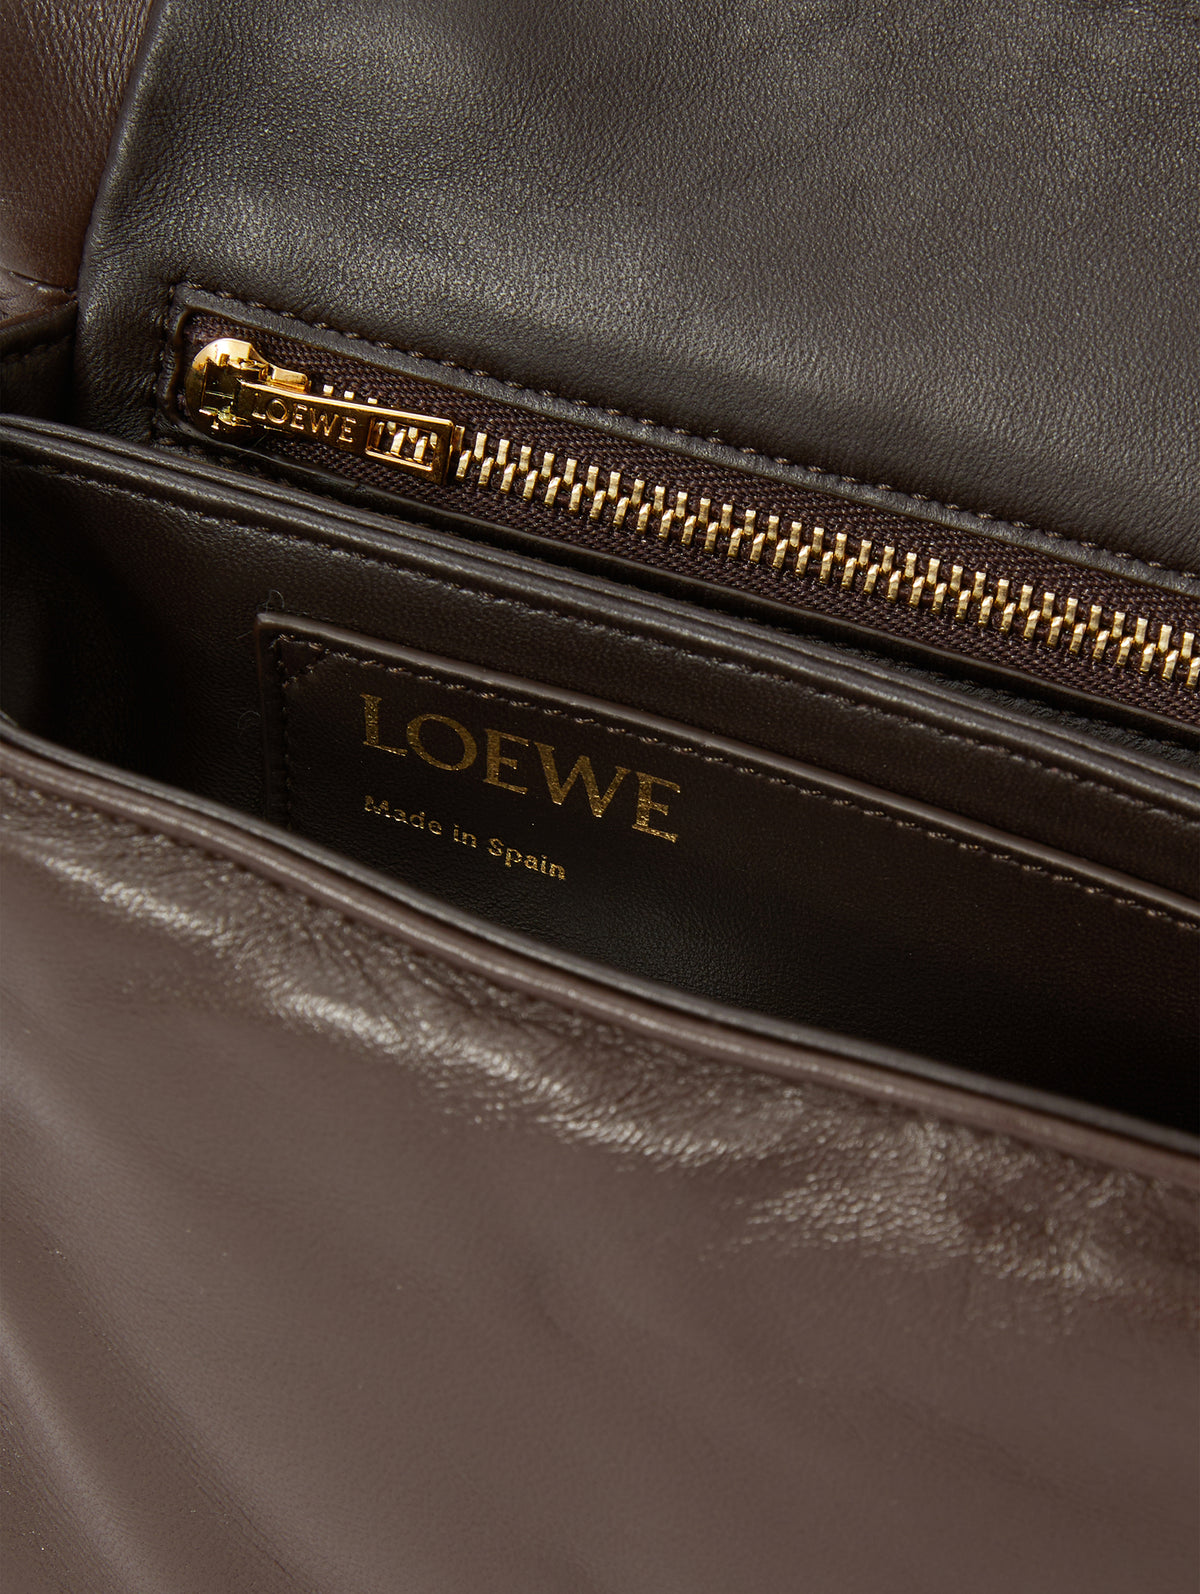 Goya Medium Leather Shoulder Bag in Brown - Loewe